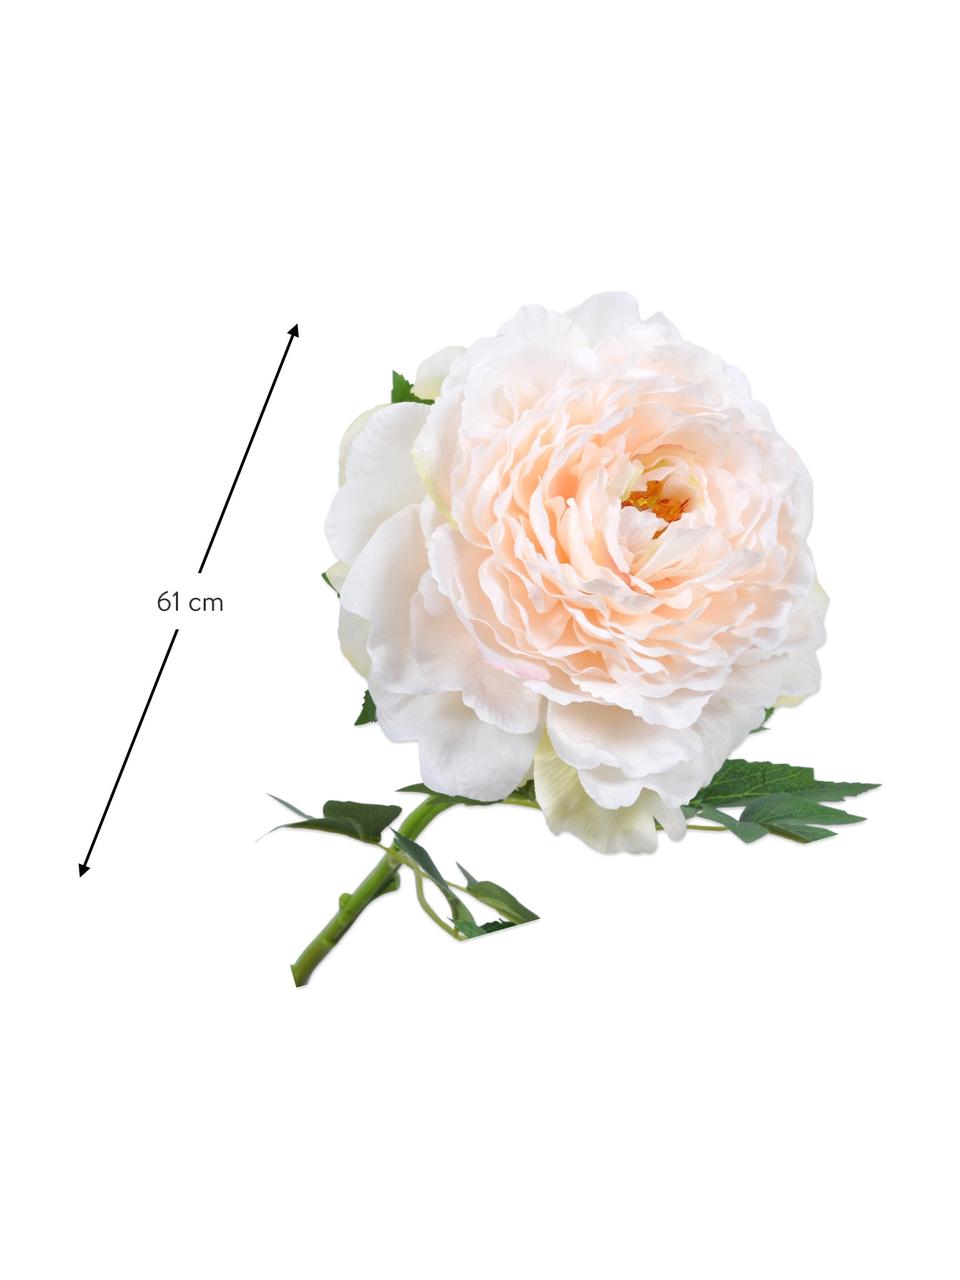 Kvetinová dekorácia- pivónia, Plast, kovový drôt, Biela, bledoružová, D 61 cm